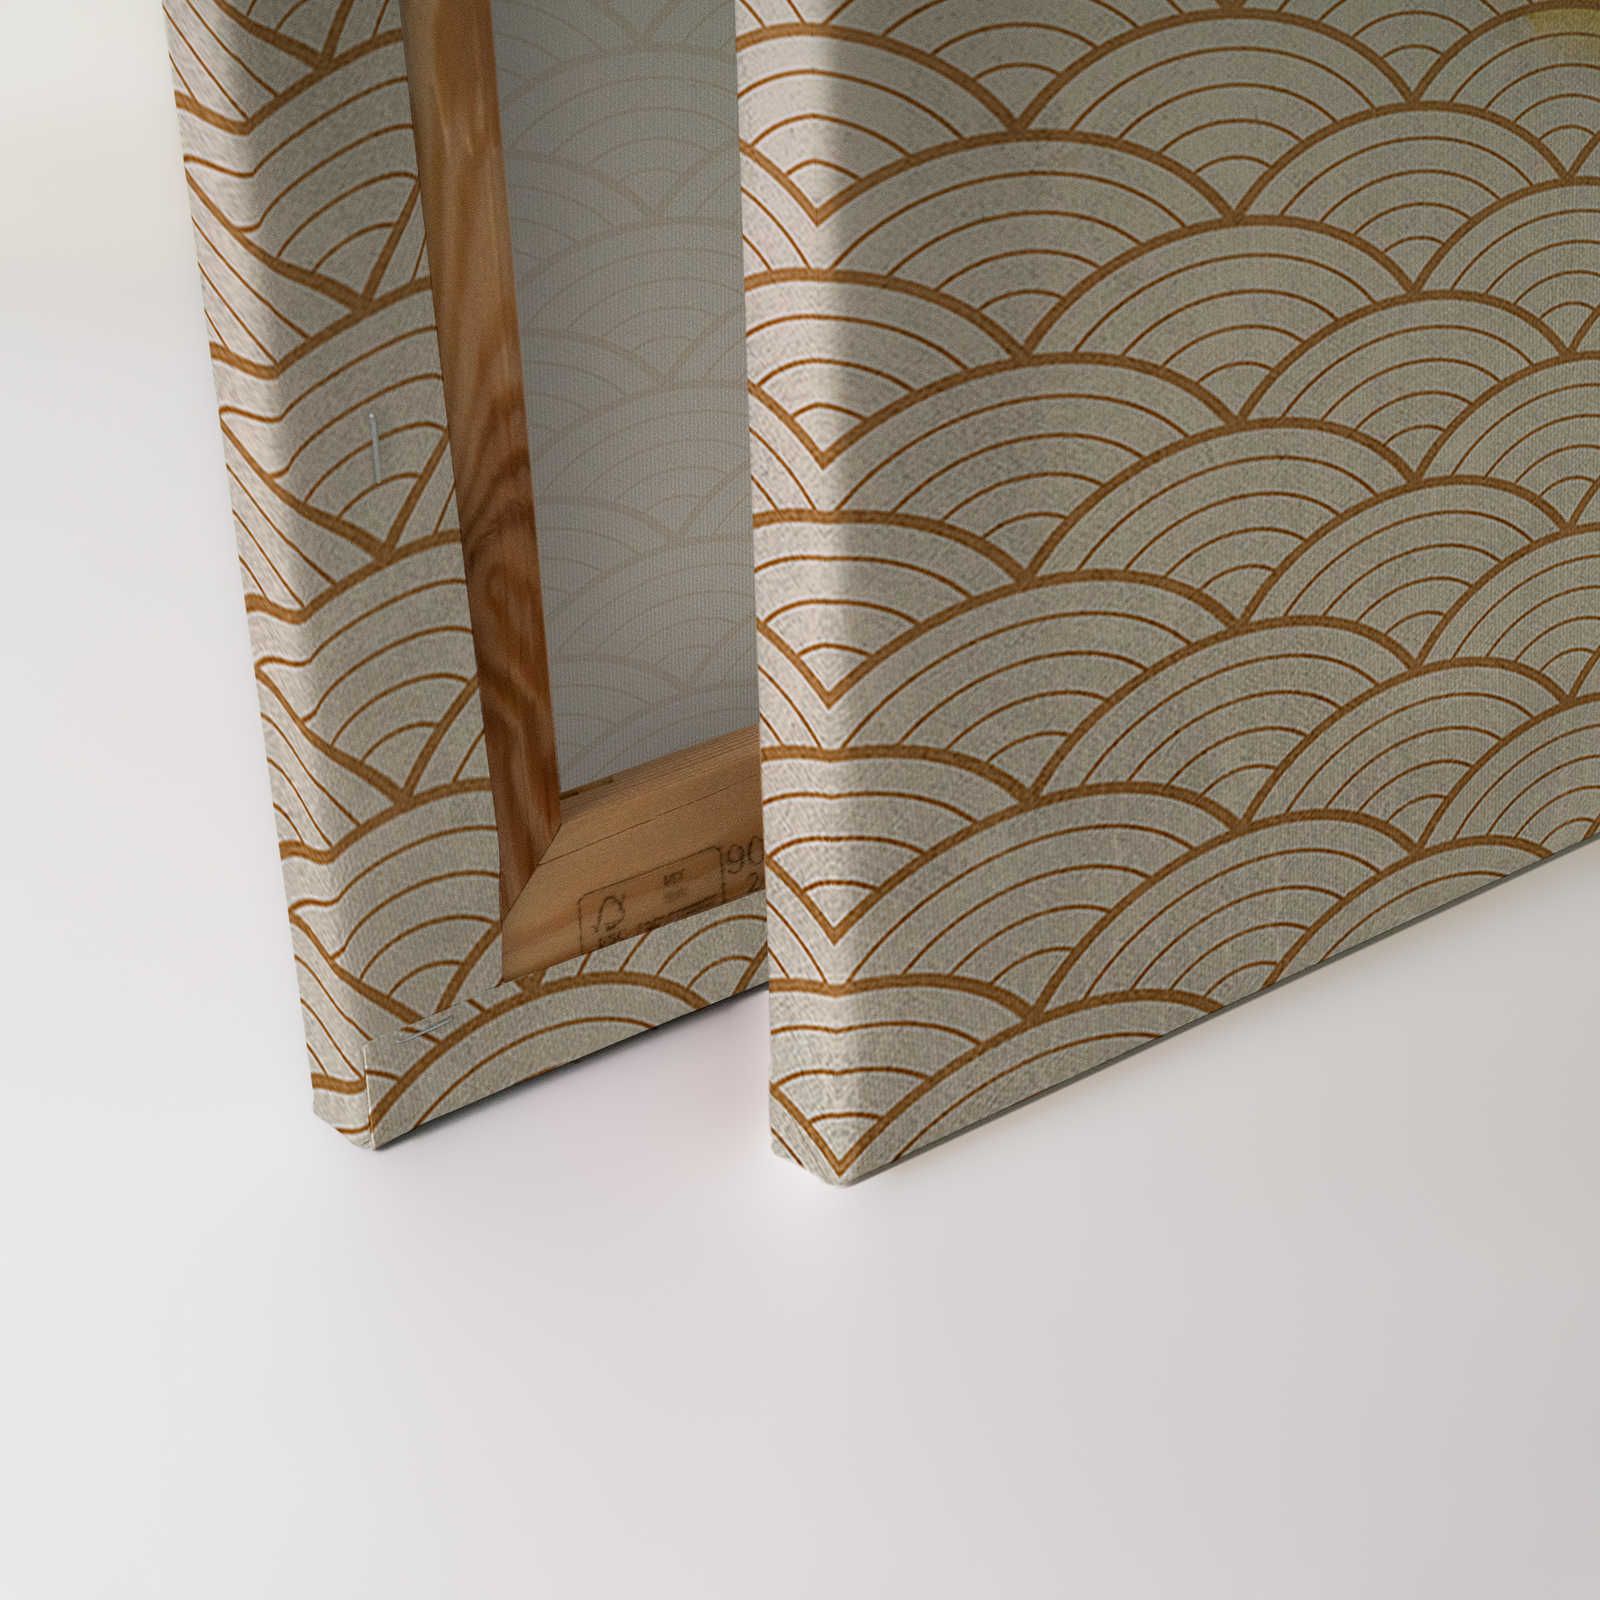             Voliere 3 - Leinwandbild Papagei & goldenes Muster im Vintage Stil – 0,90 m x 0,60 m
        